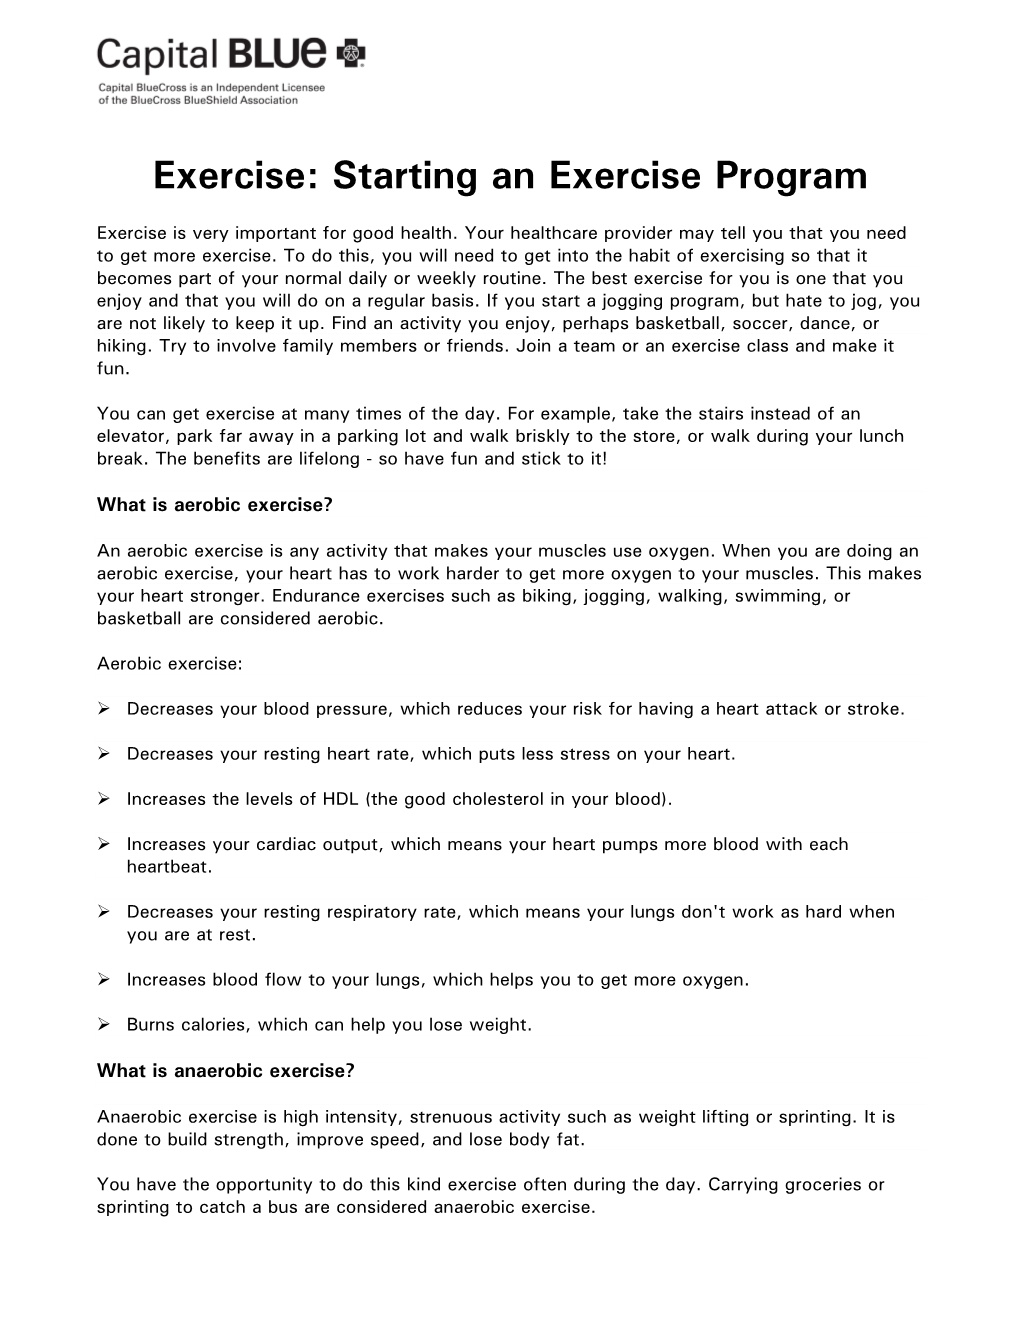 Exercise: Starting an Exercise Program Tip Sheet